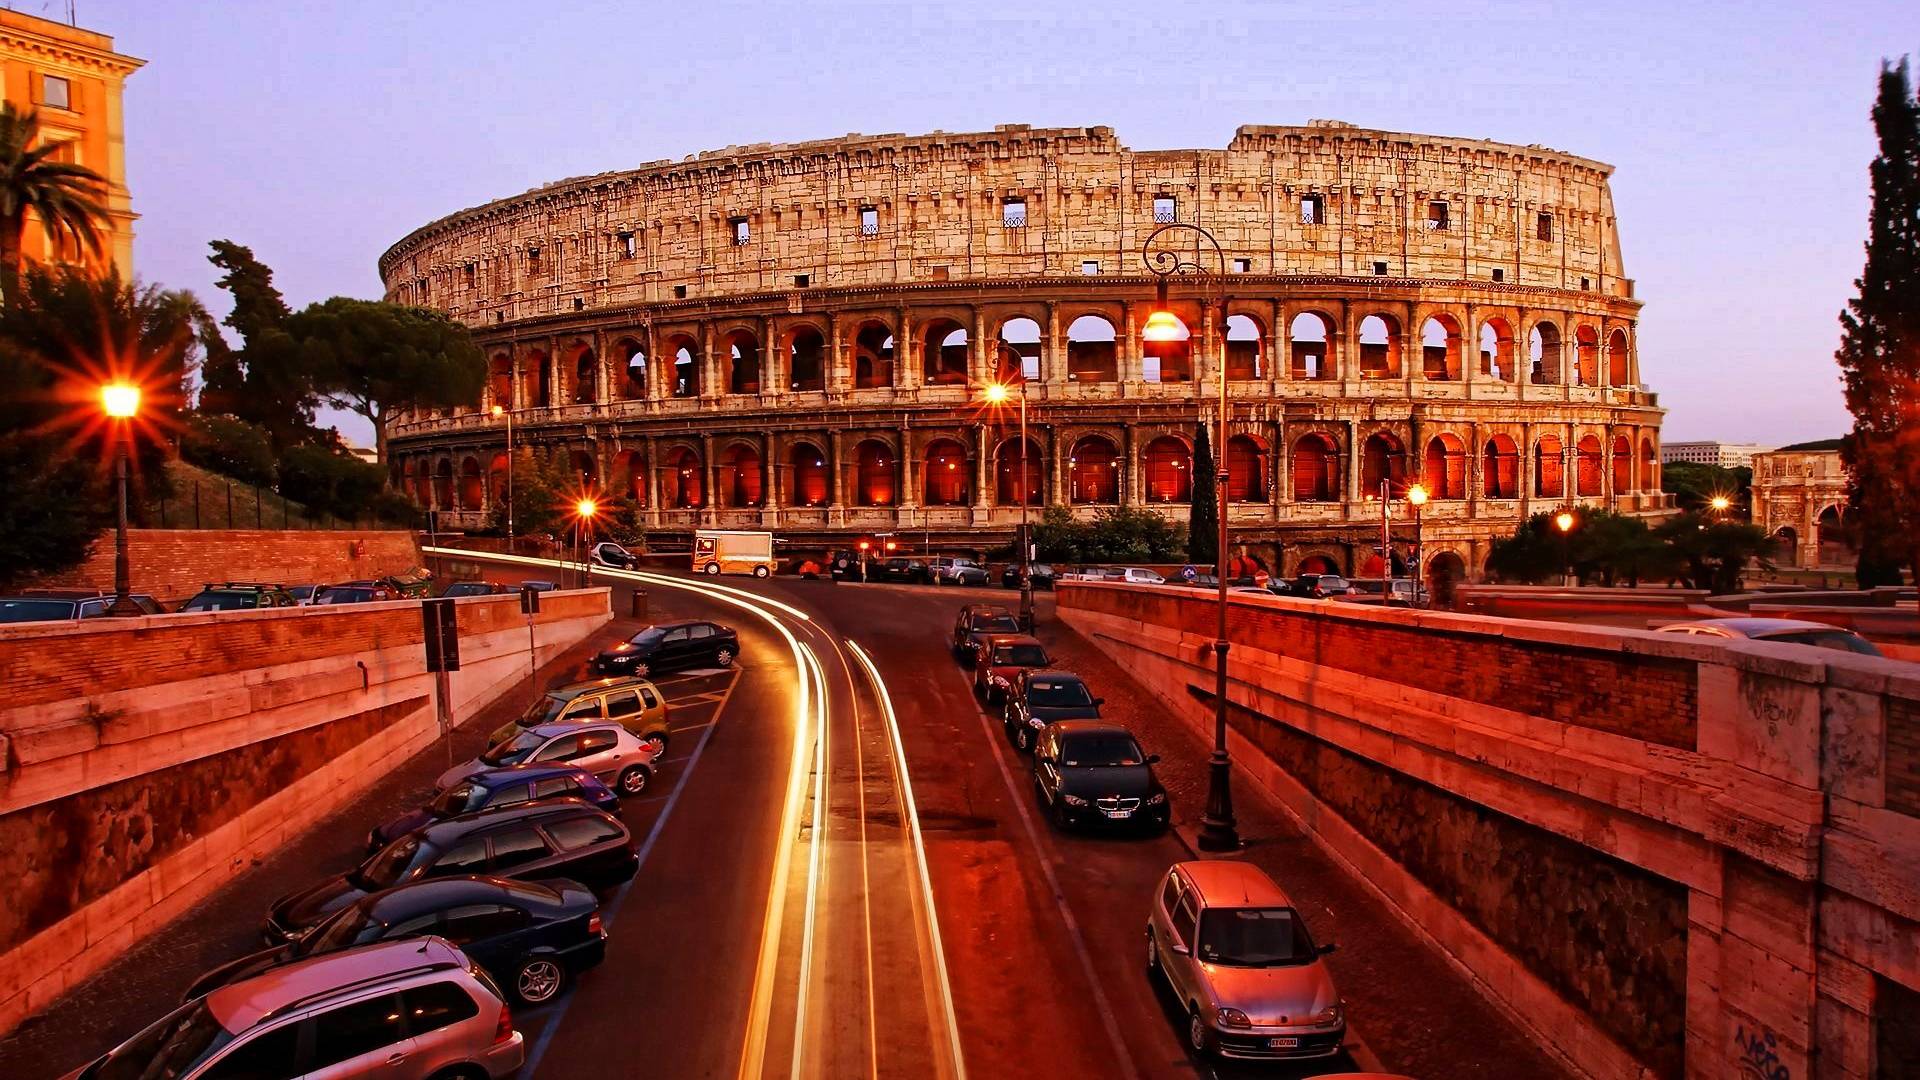 کولوسئوم (Colosseum)